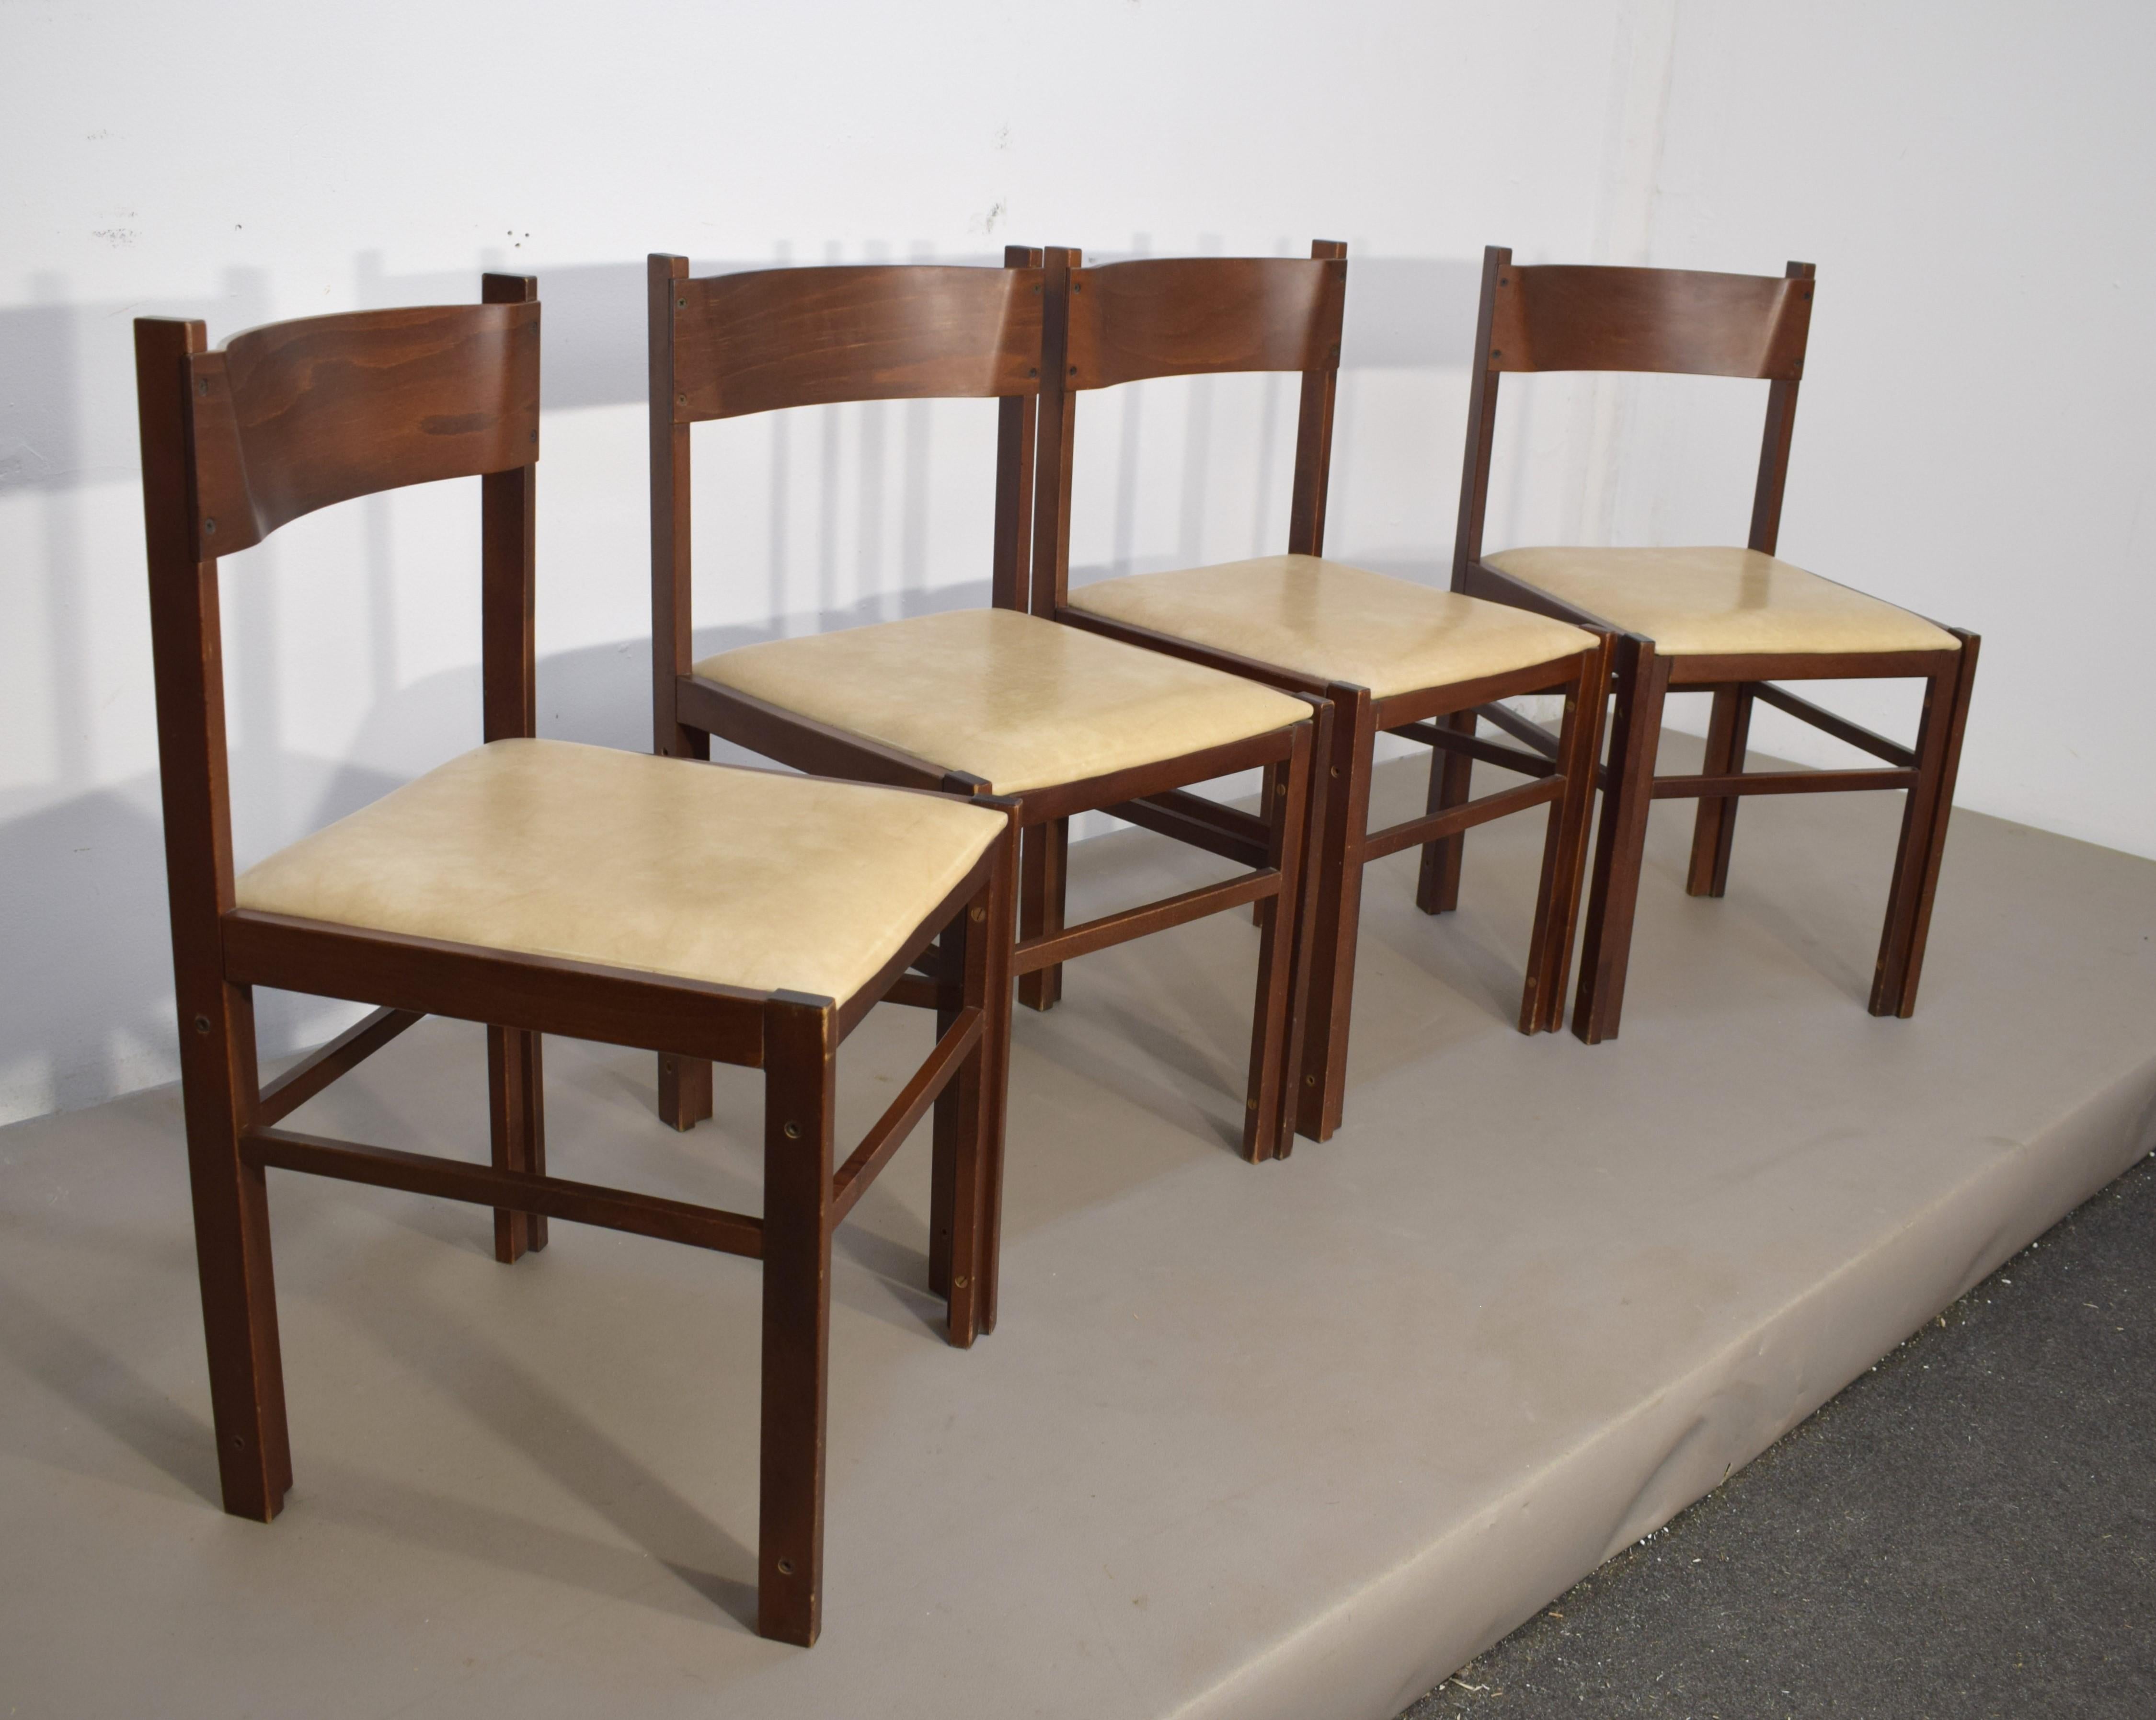 Ensemble de chaises italiennes par Dal Vera, années 1960.

Dimensions : H= 79 cm ; L= 42 cm ; P= 43 cm ; Siège H= 44 cm.